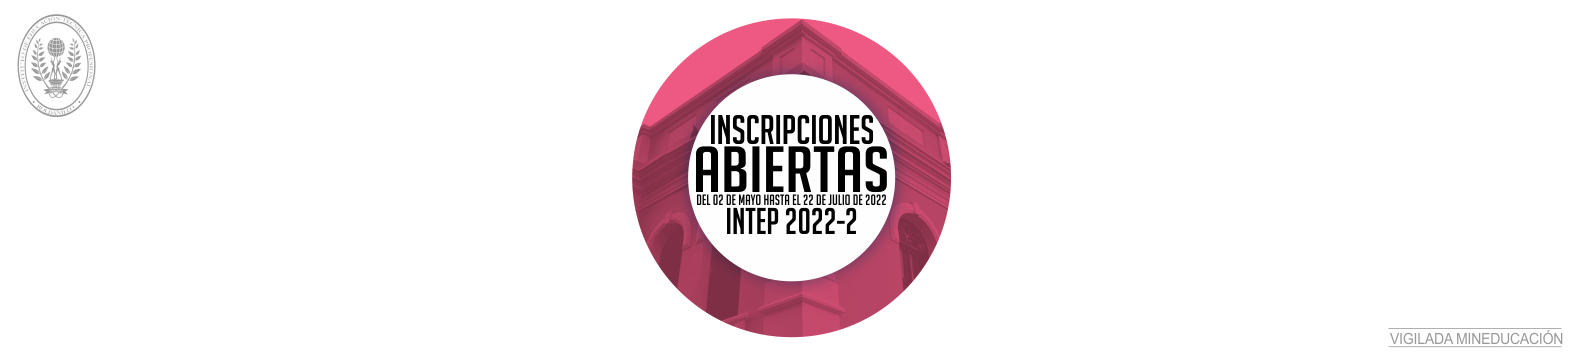 INSCRIPCIONES ABIERTAS INTEP 2022